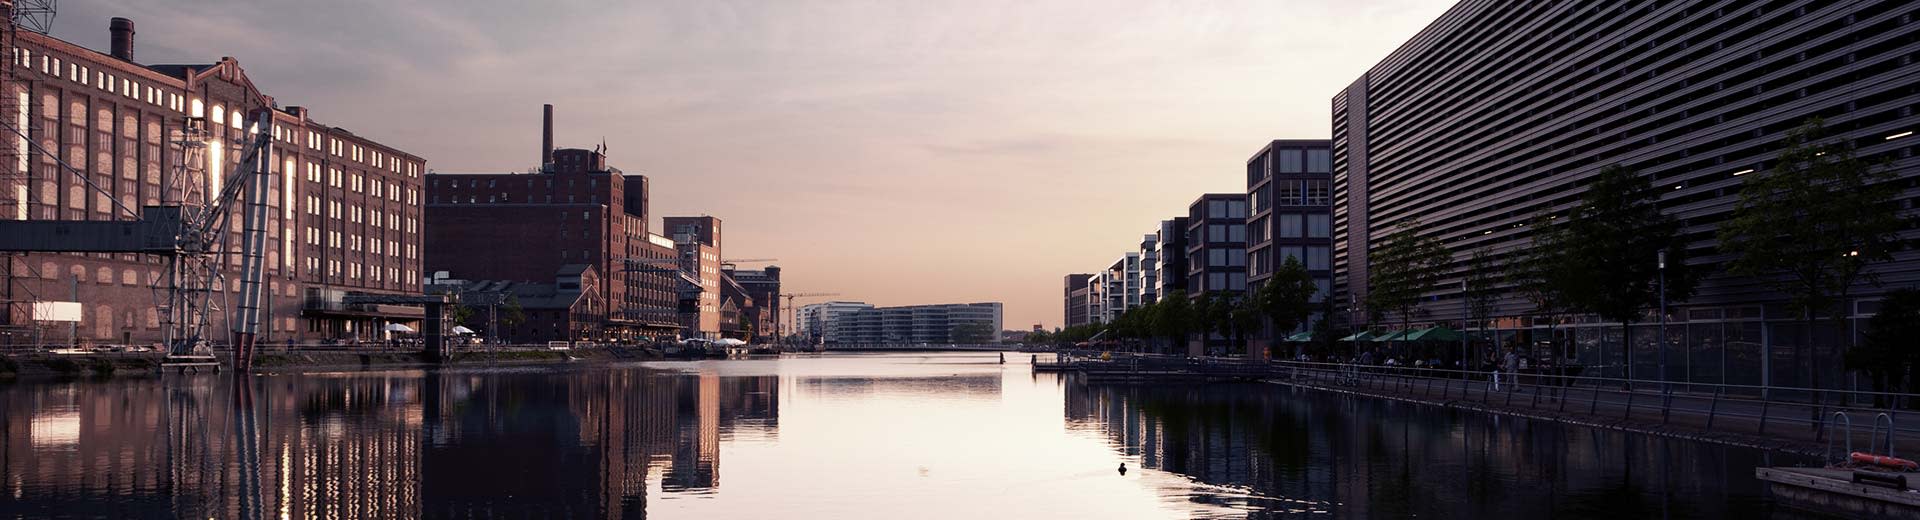 Les anciens bâtiments industriels de Duisburg se sont placés contre un soleil de gradin, avec un canal menant à un horizon lointain.